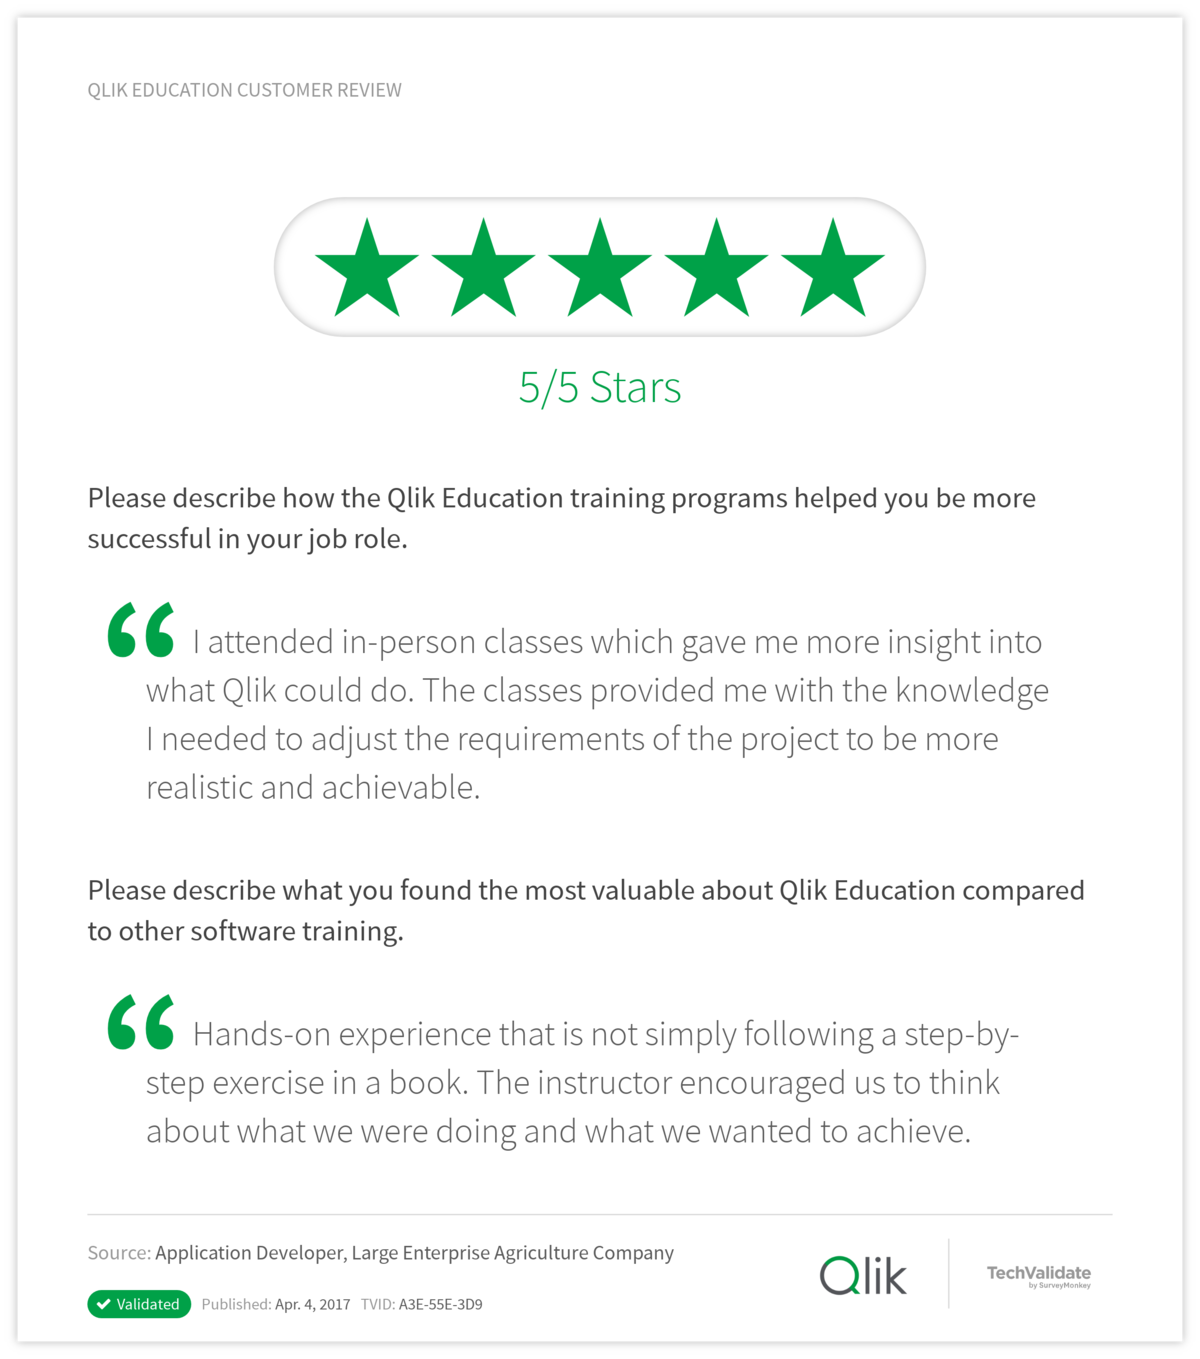 Qlik Education Customer Review